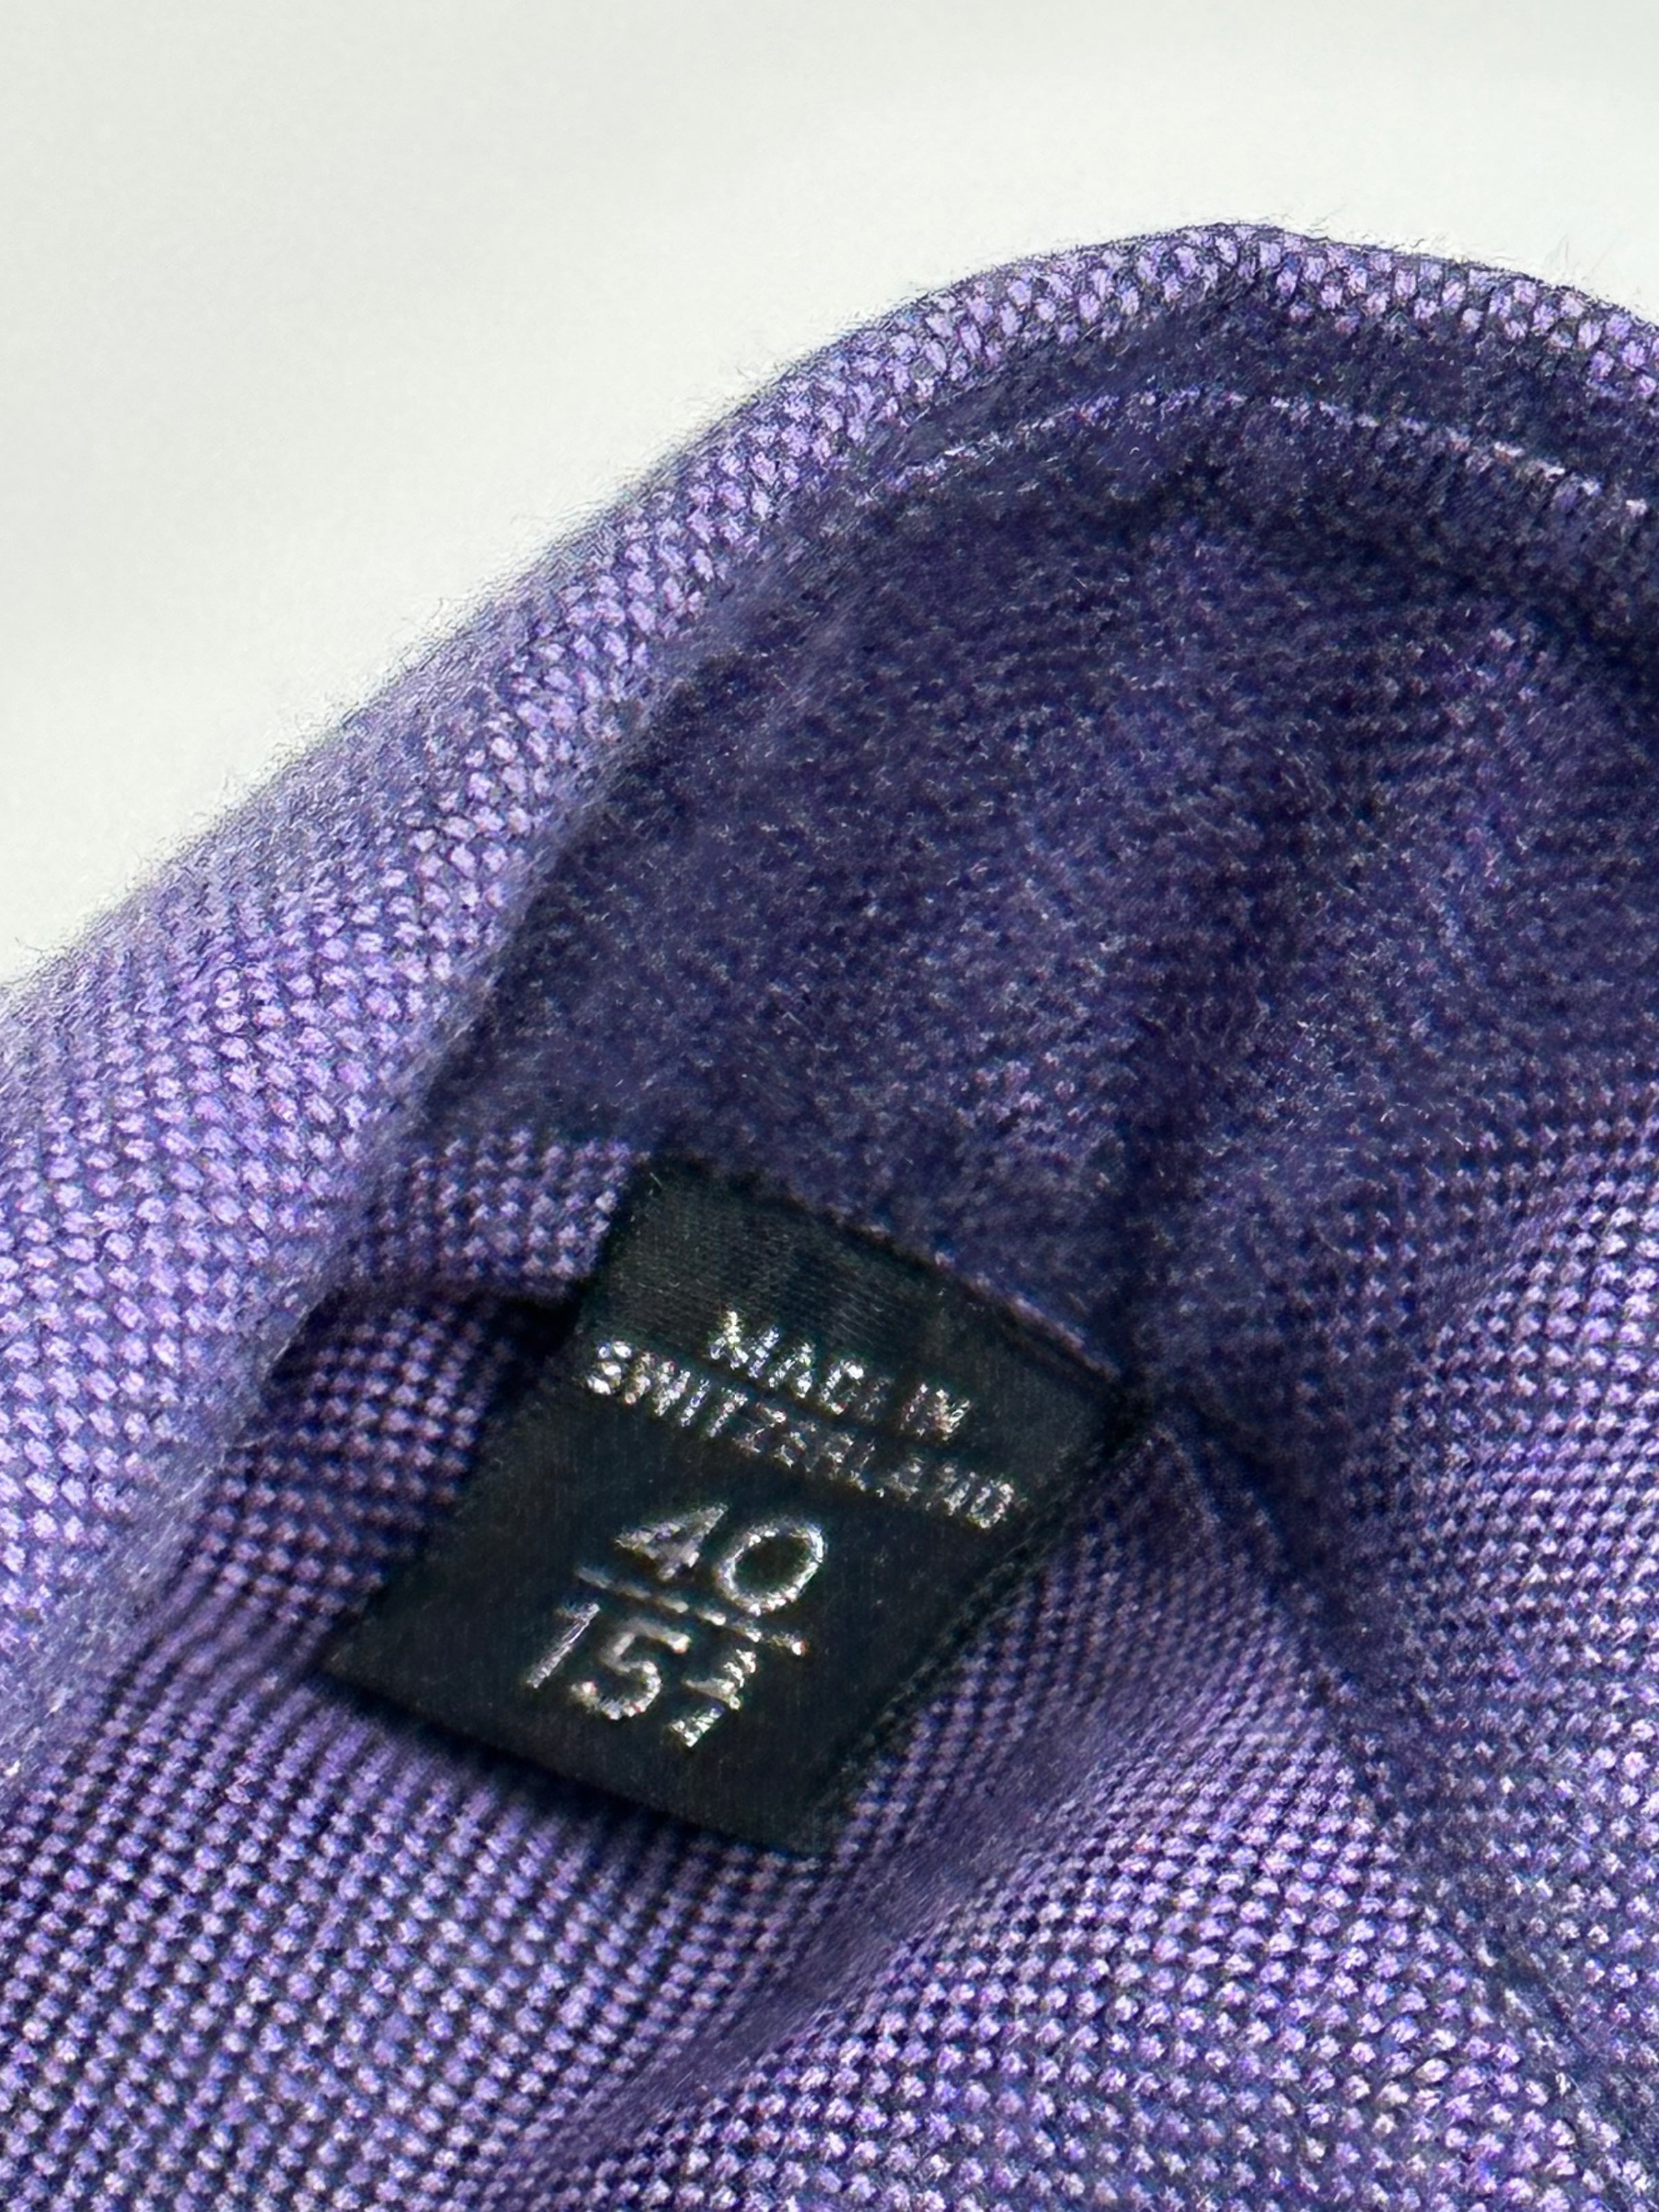 Tom Ford Purple Tab Collar Shirt